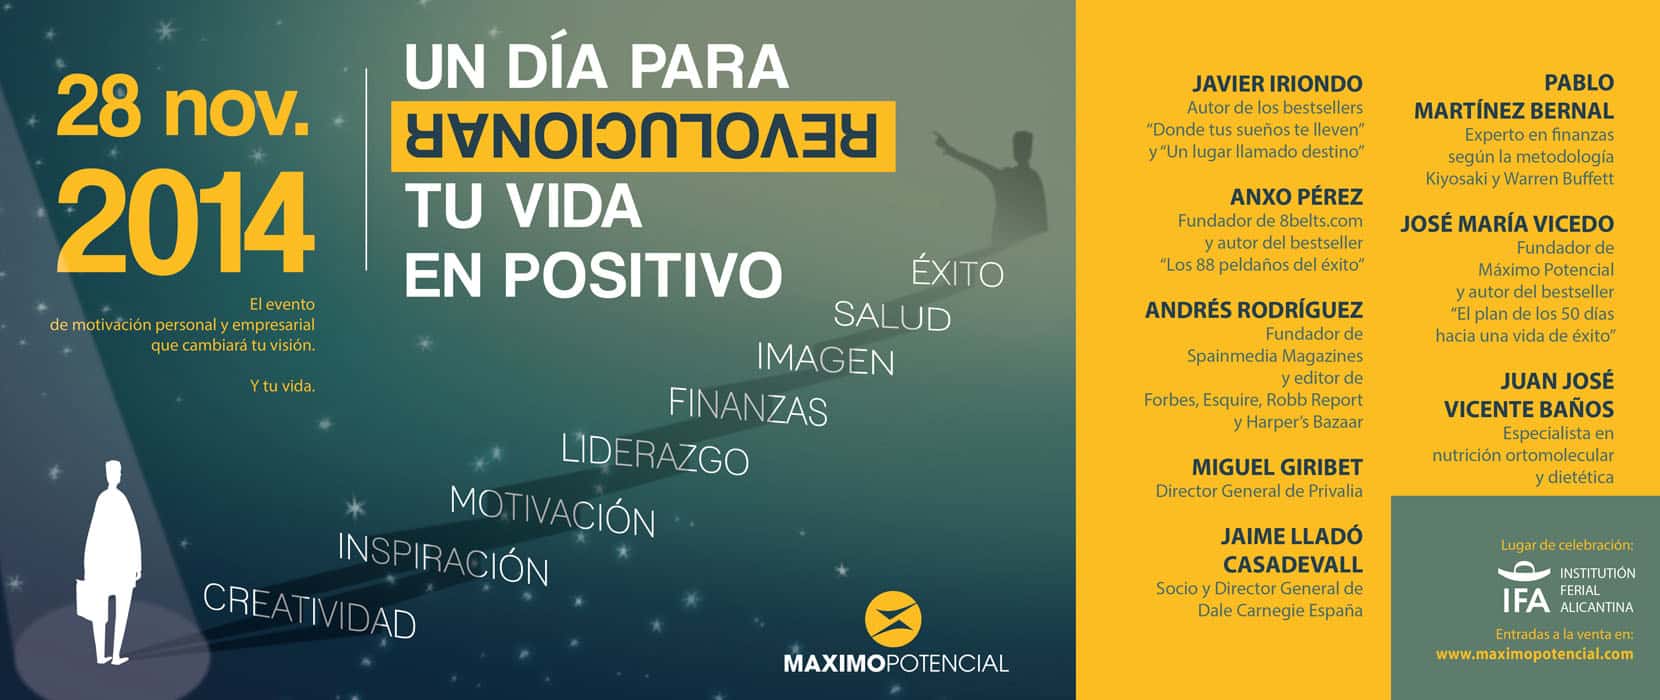 Máximo Potencial en IFA Alicante. Un evento para revolucionar tu vida en positivo.